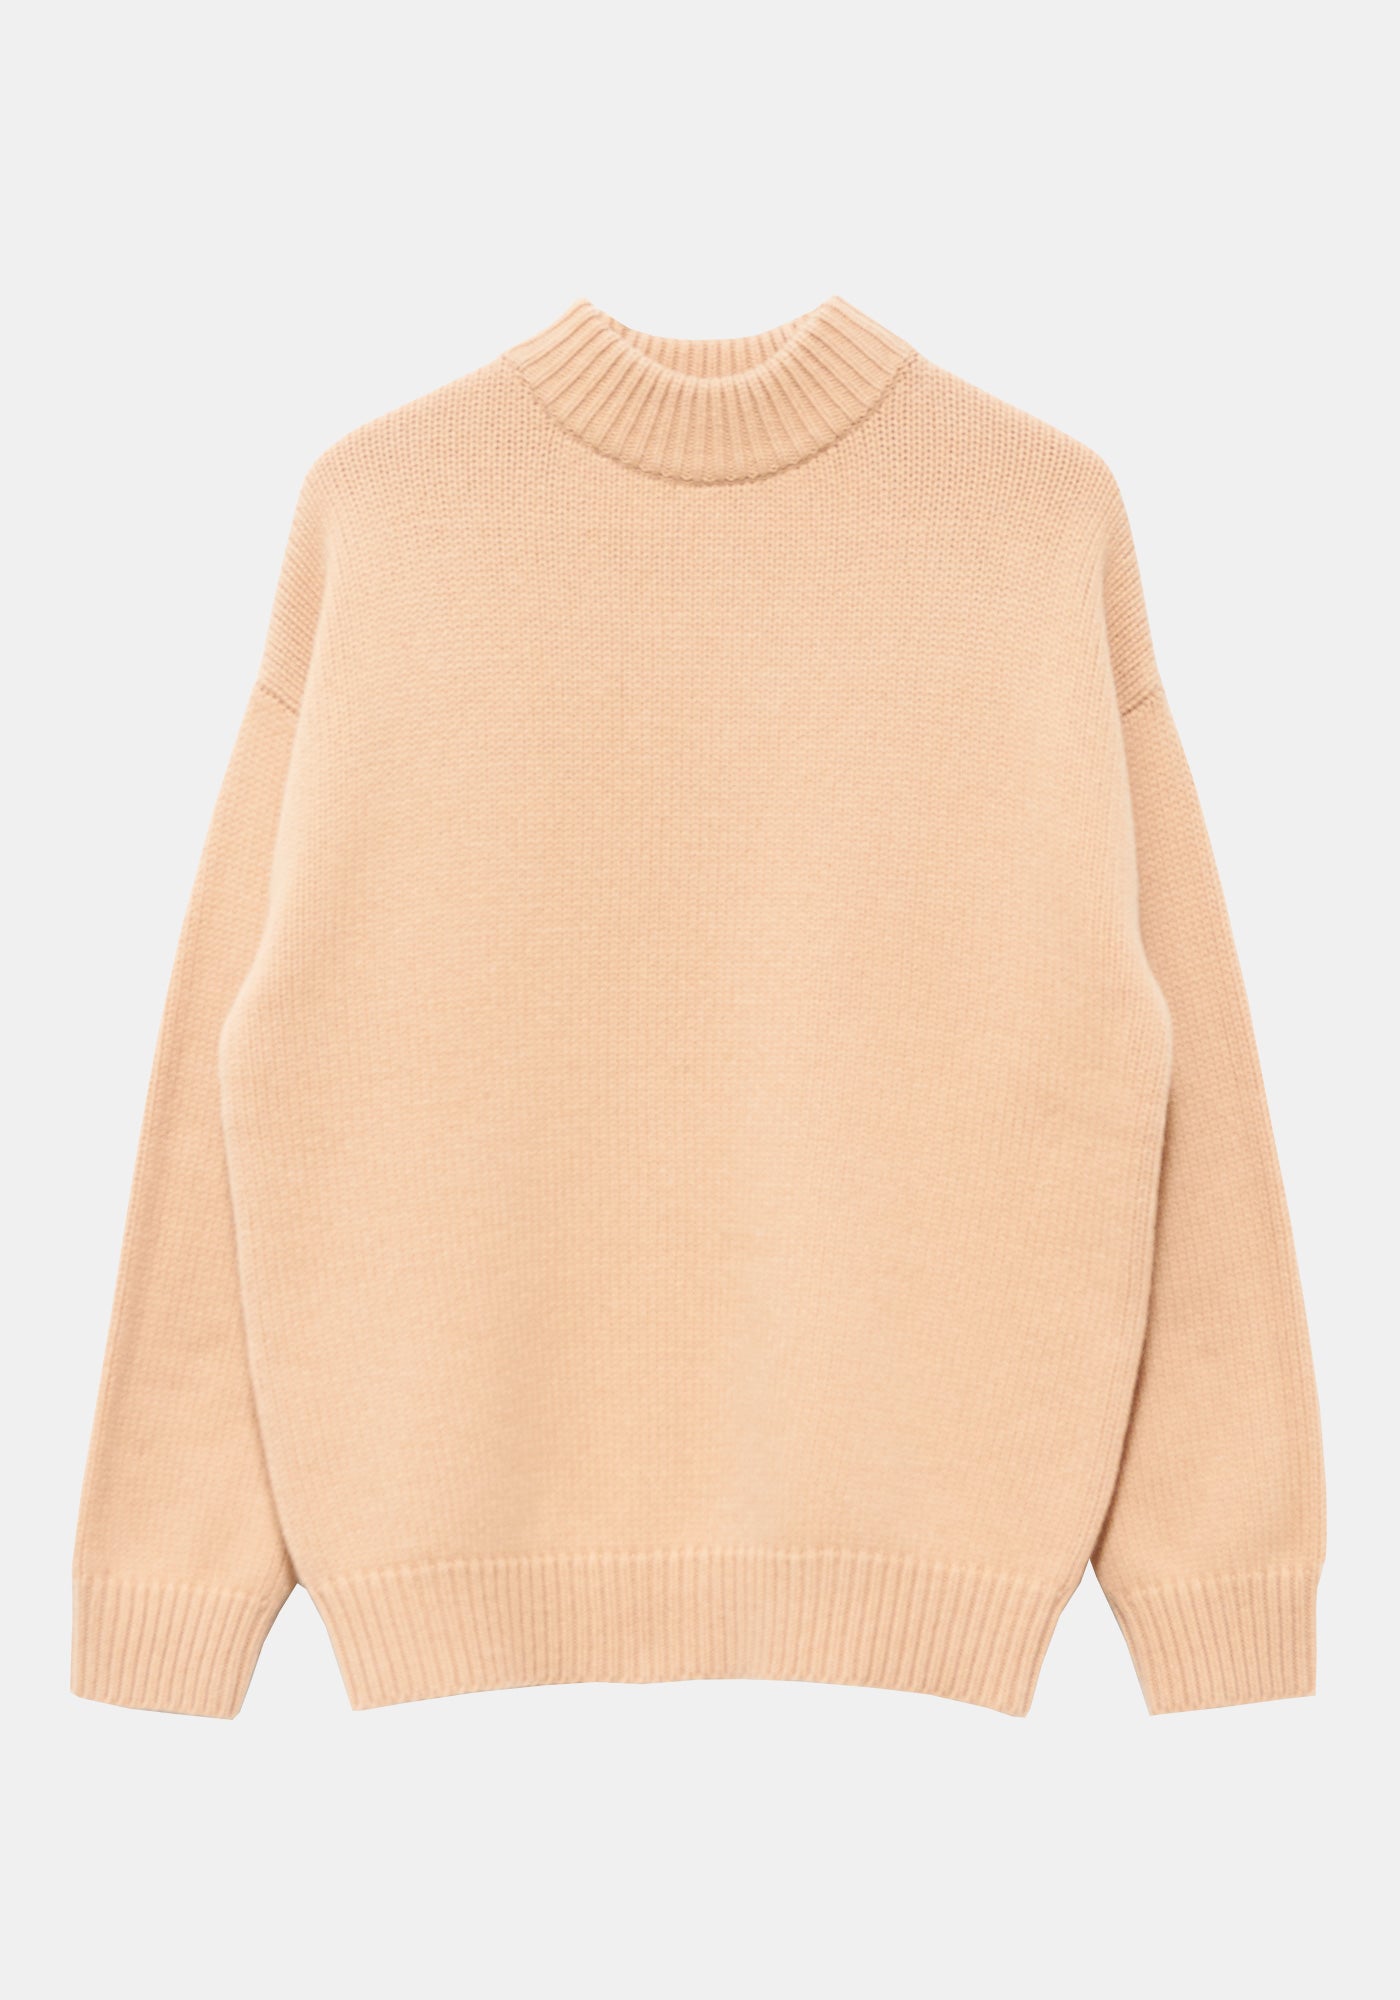 Deon Sweater